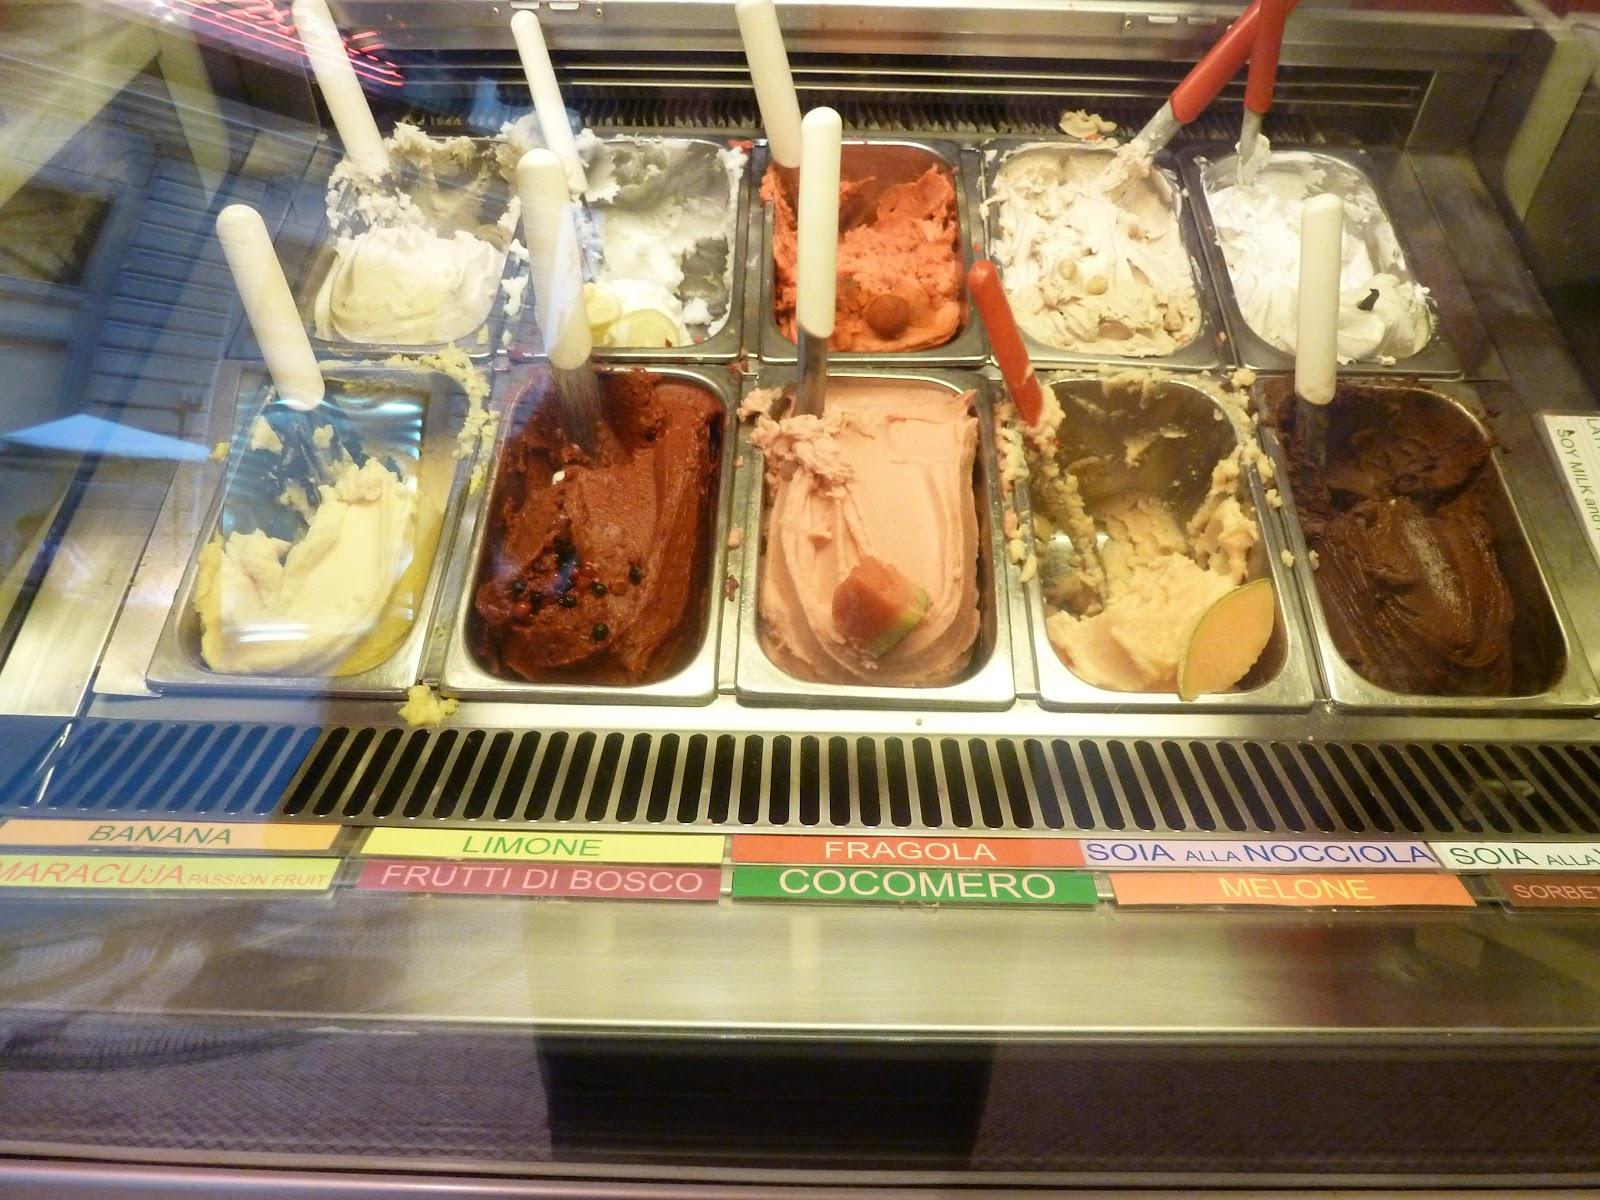 Mes bonnes adresses en Toscane 2: les glaces de chez Perque No à Florence